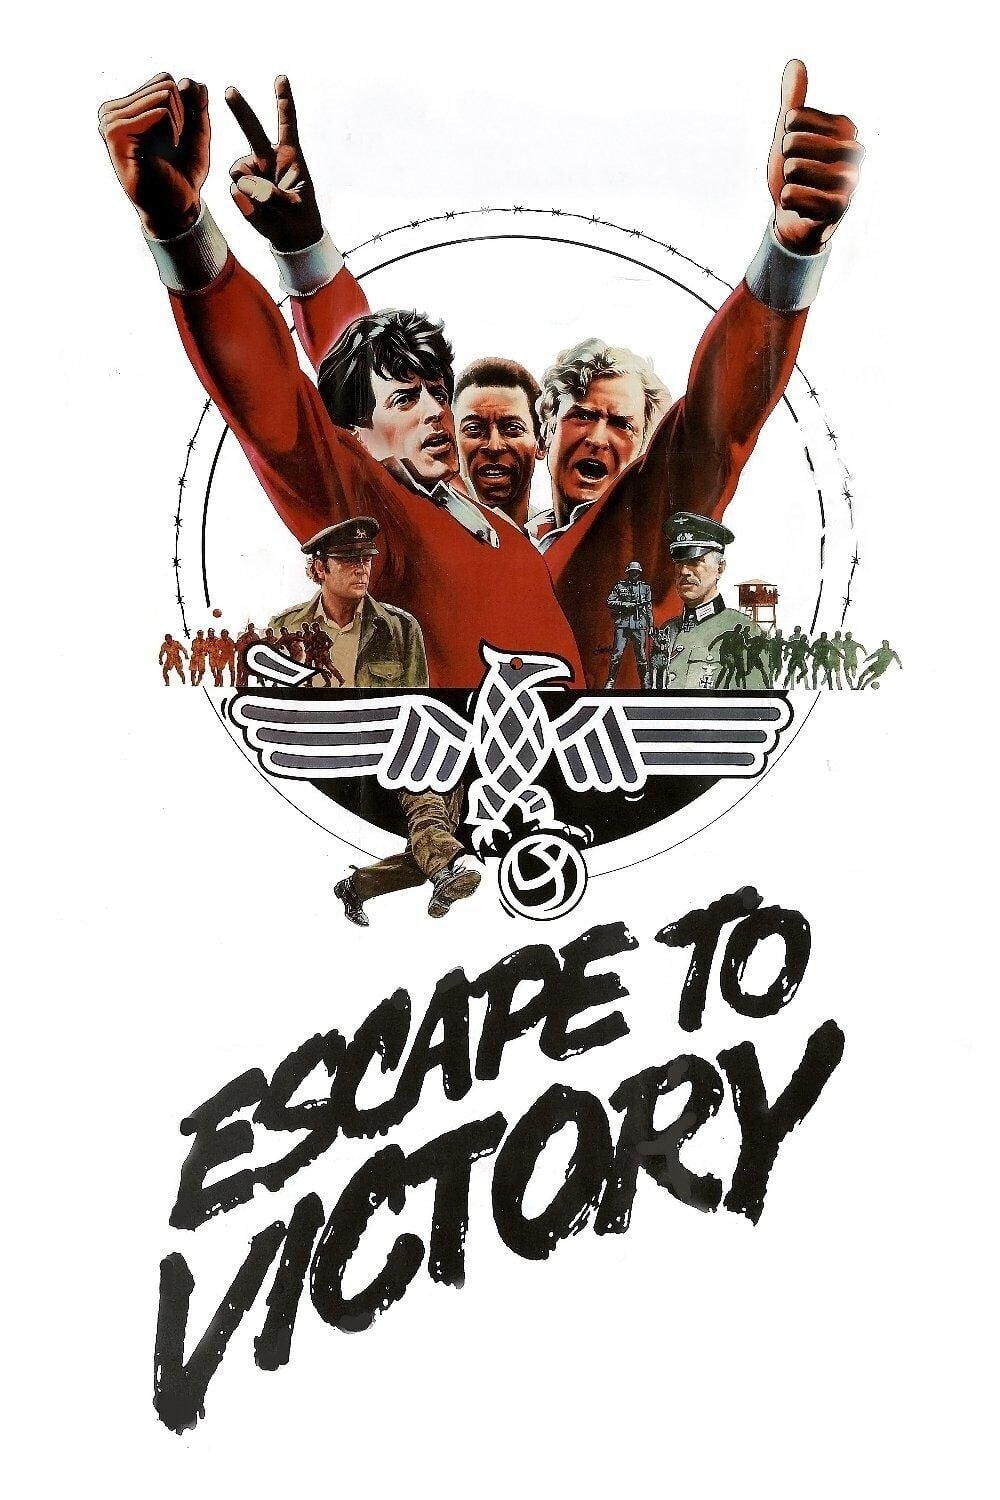 Escape to Victory (1981)